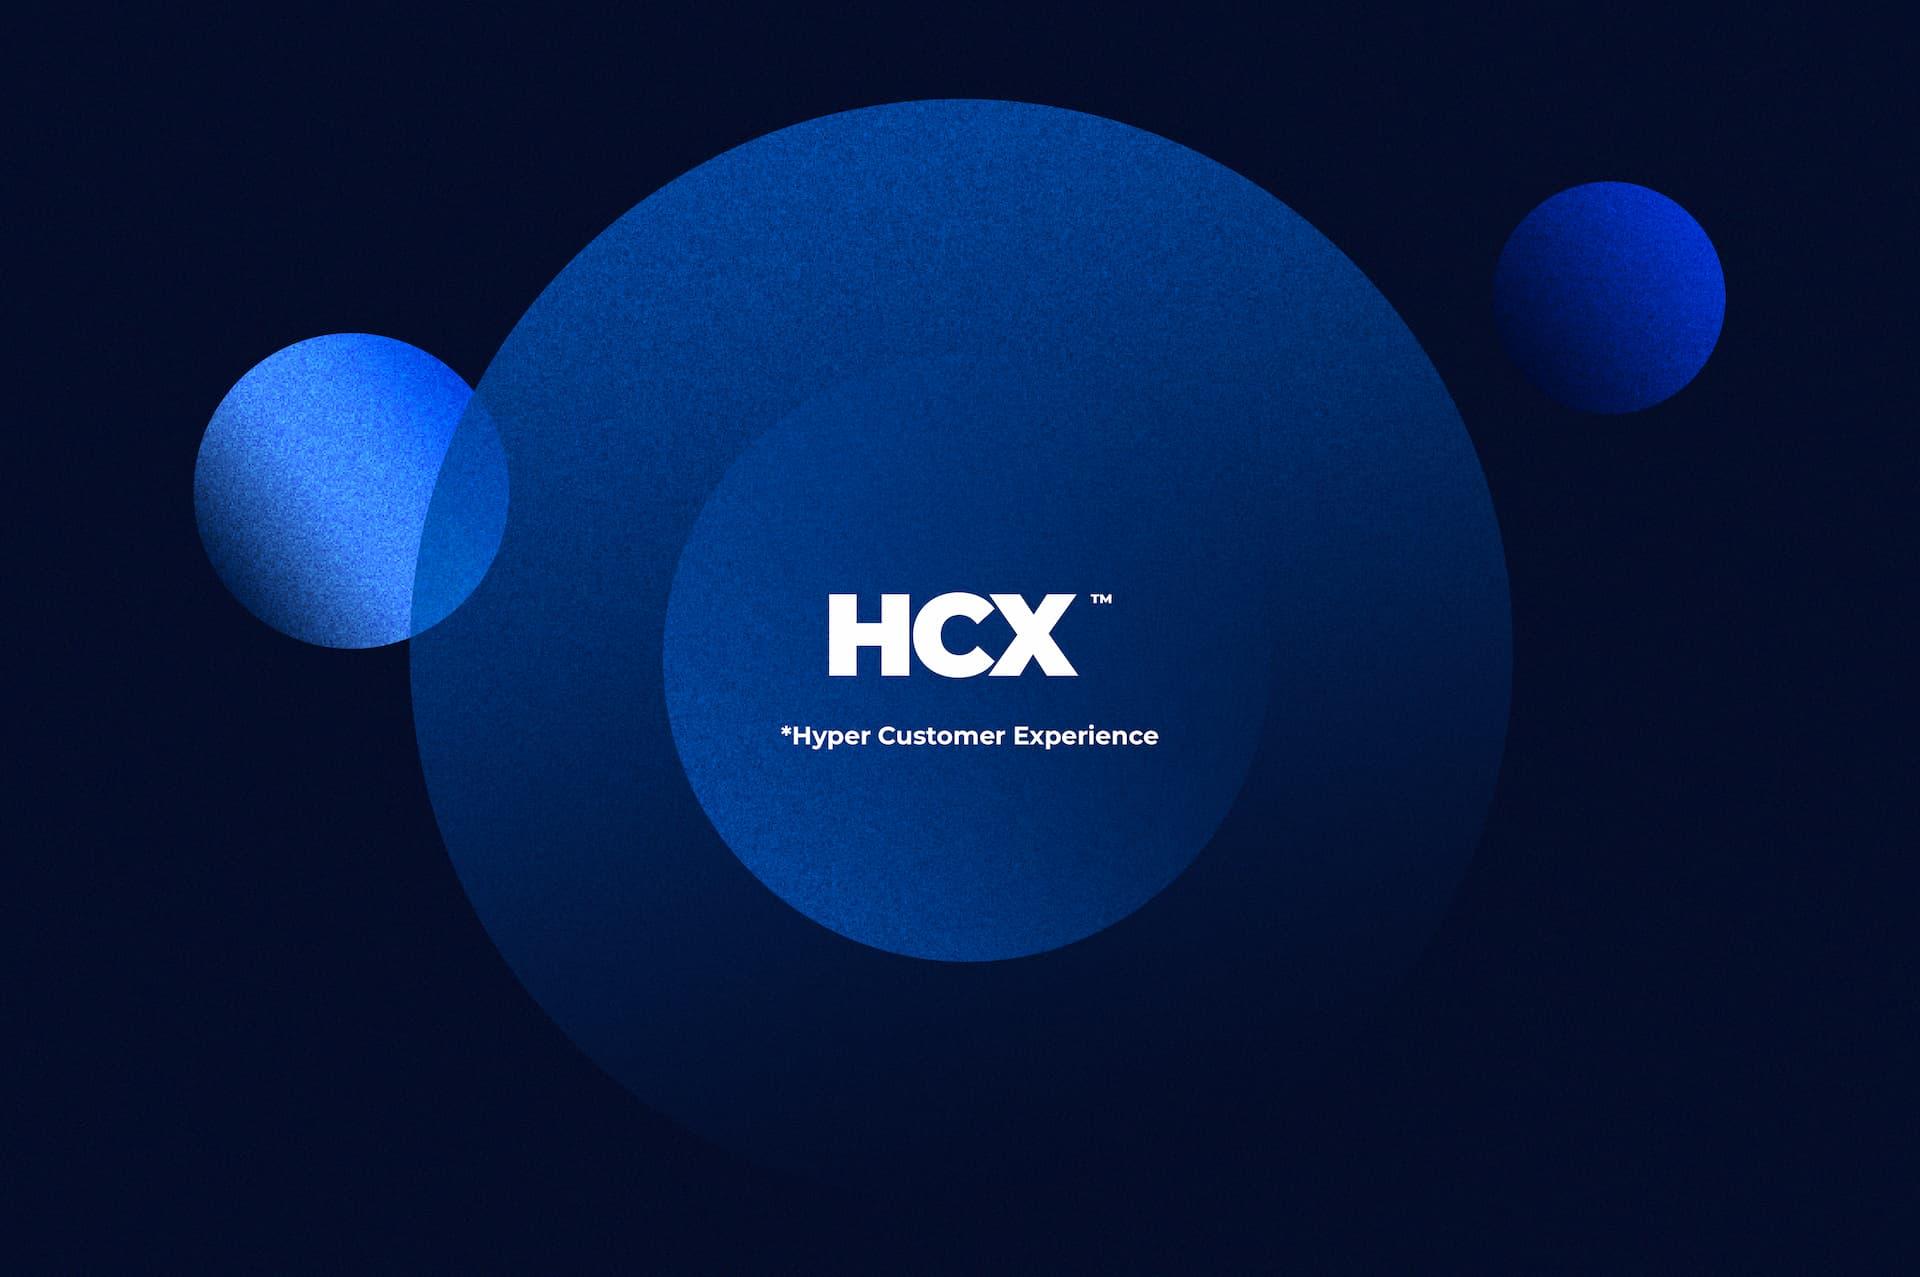 Visuel de l'offre HCX 